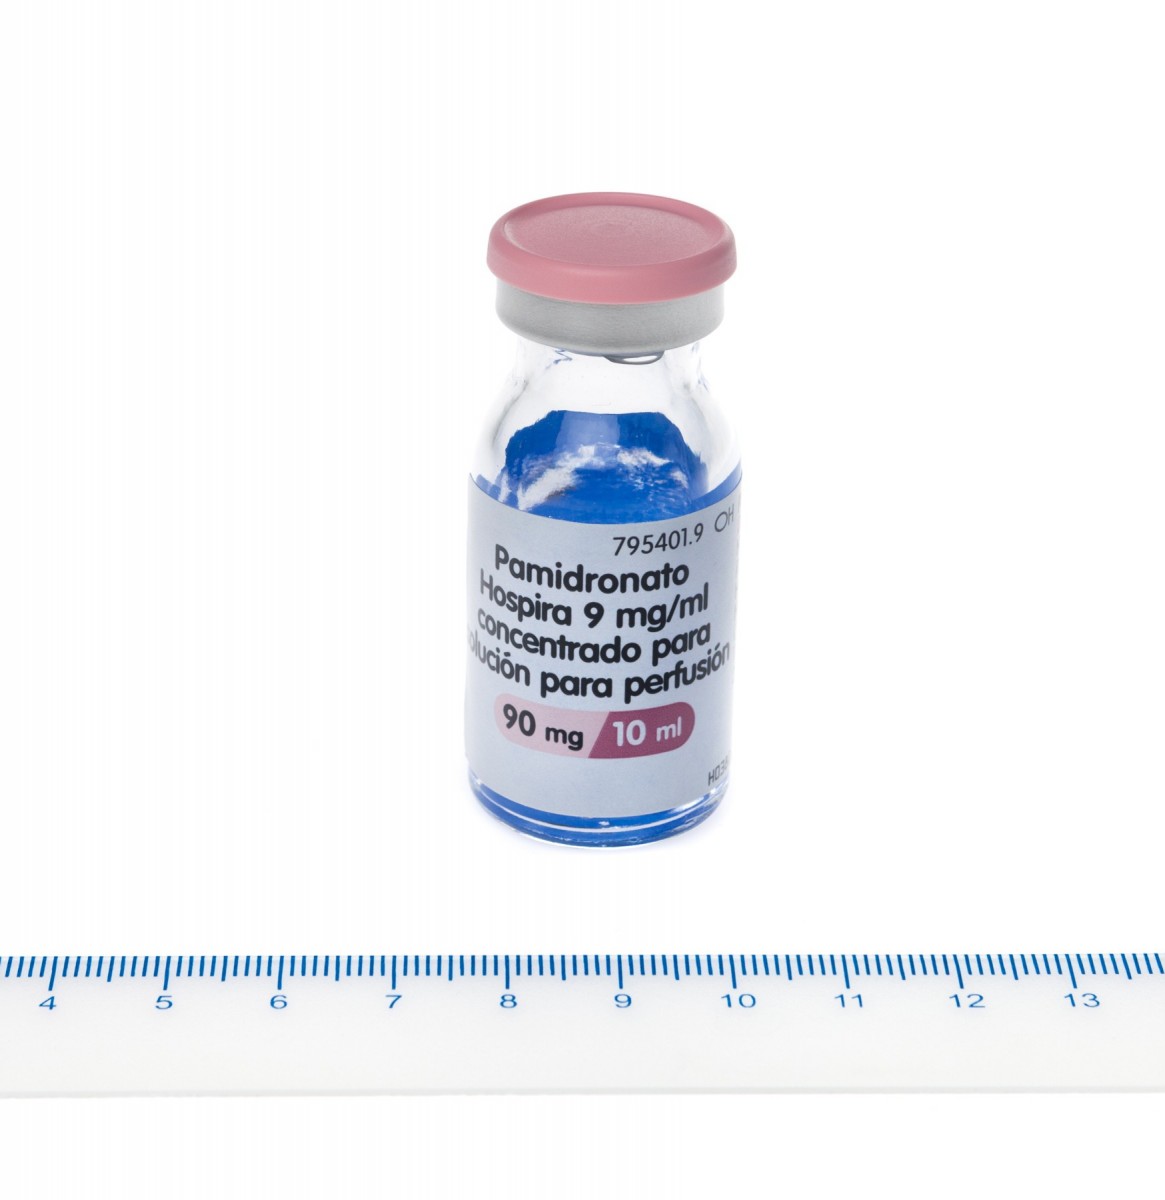 PAMIDRONATO HOSPIRA 9 mg/ml CONCENTRADO PARA SOLUCION PARA PERFUSION, 1 vial de 10 ml fotografía de la forma farmacéutica.